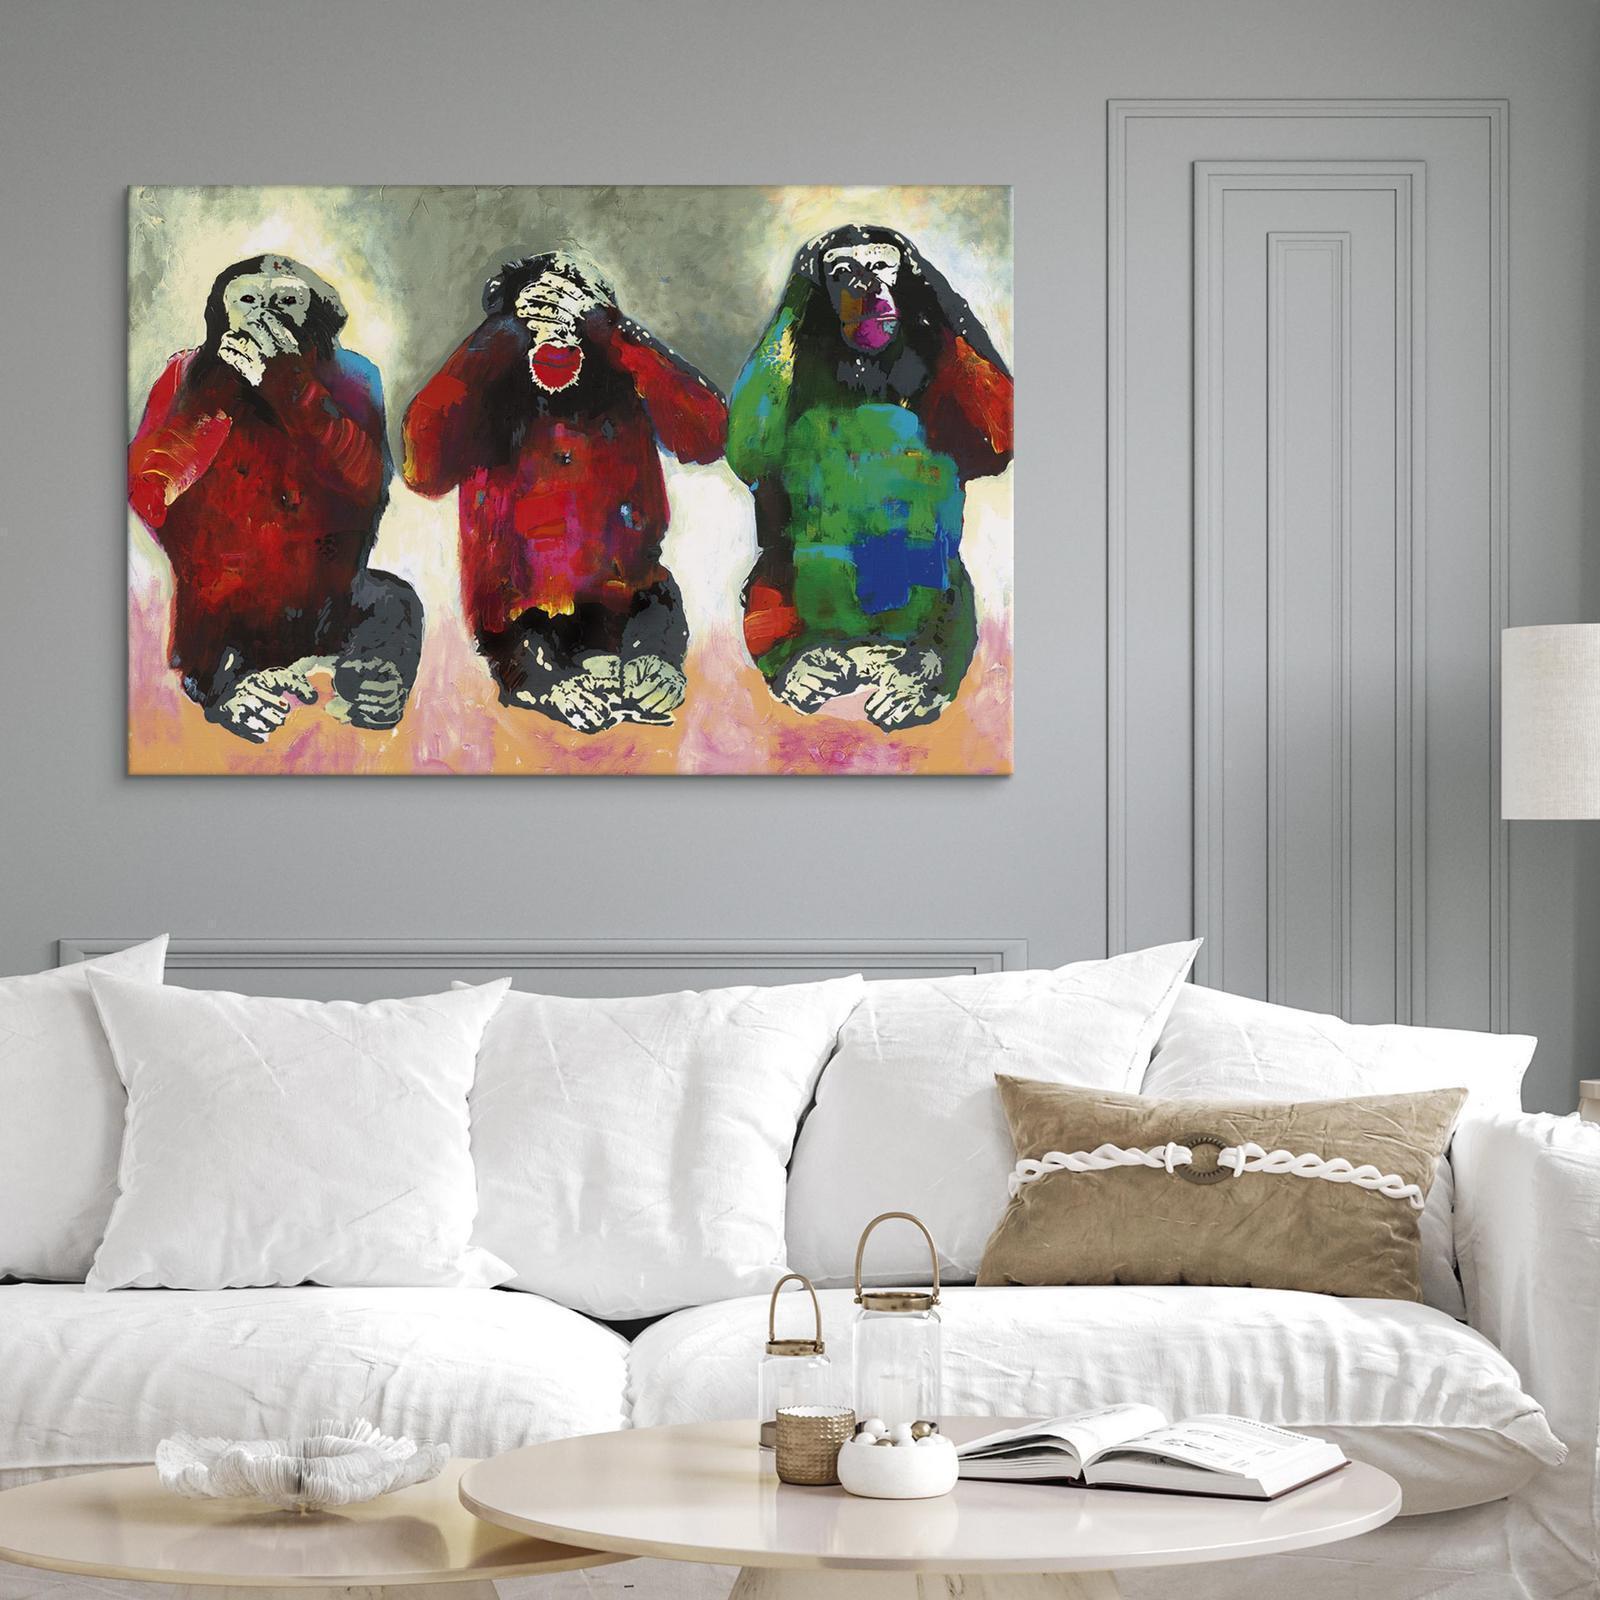 Tableau - Three Wise Monkeys